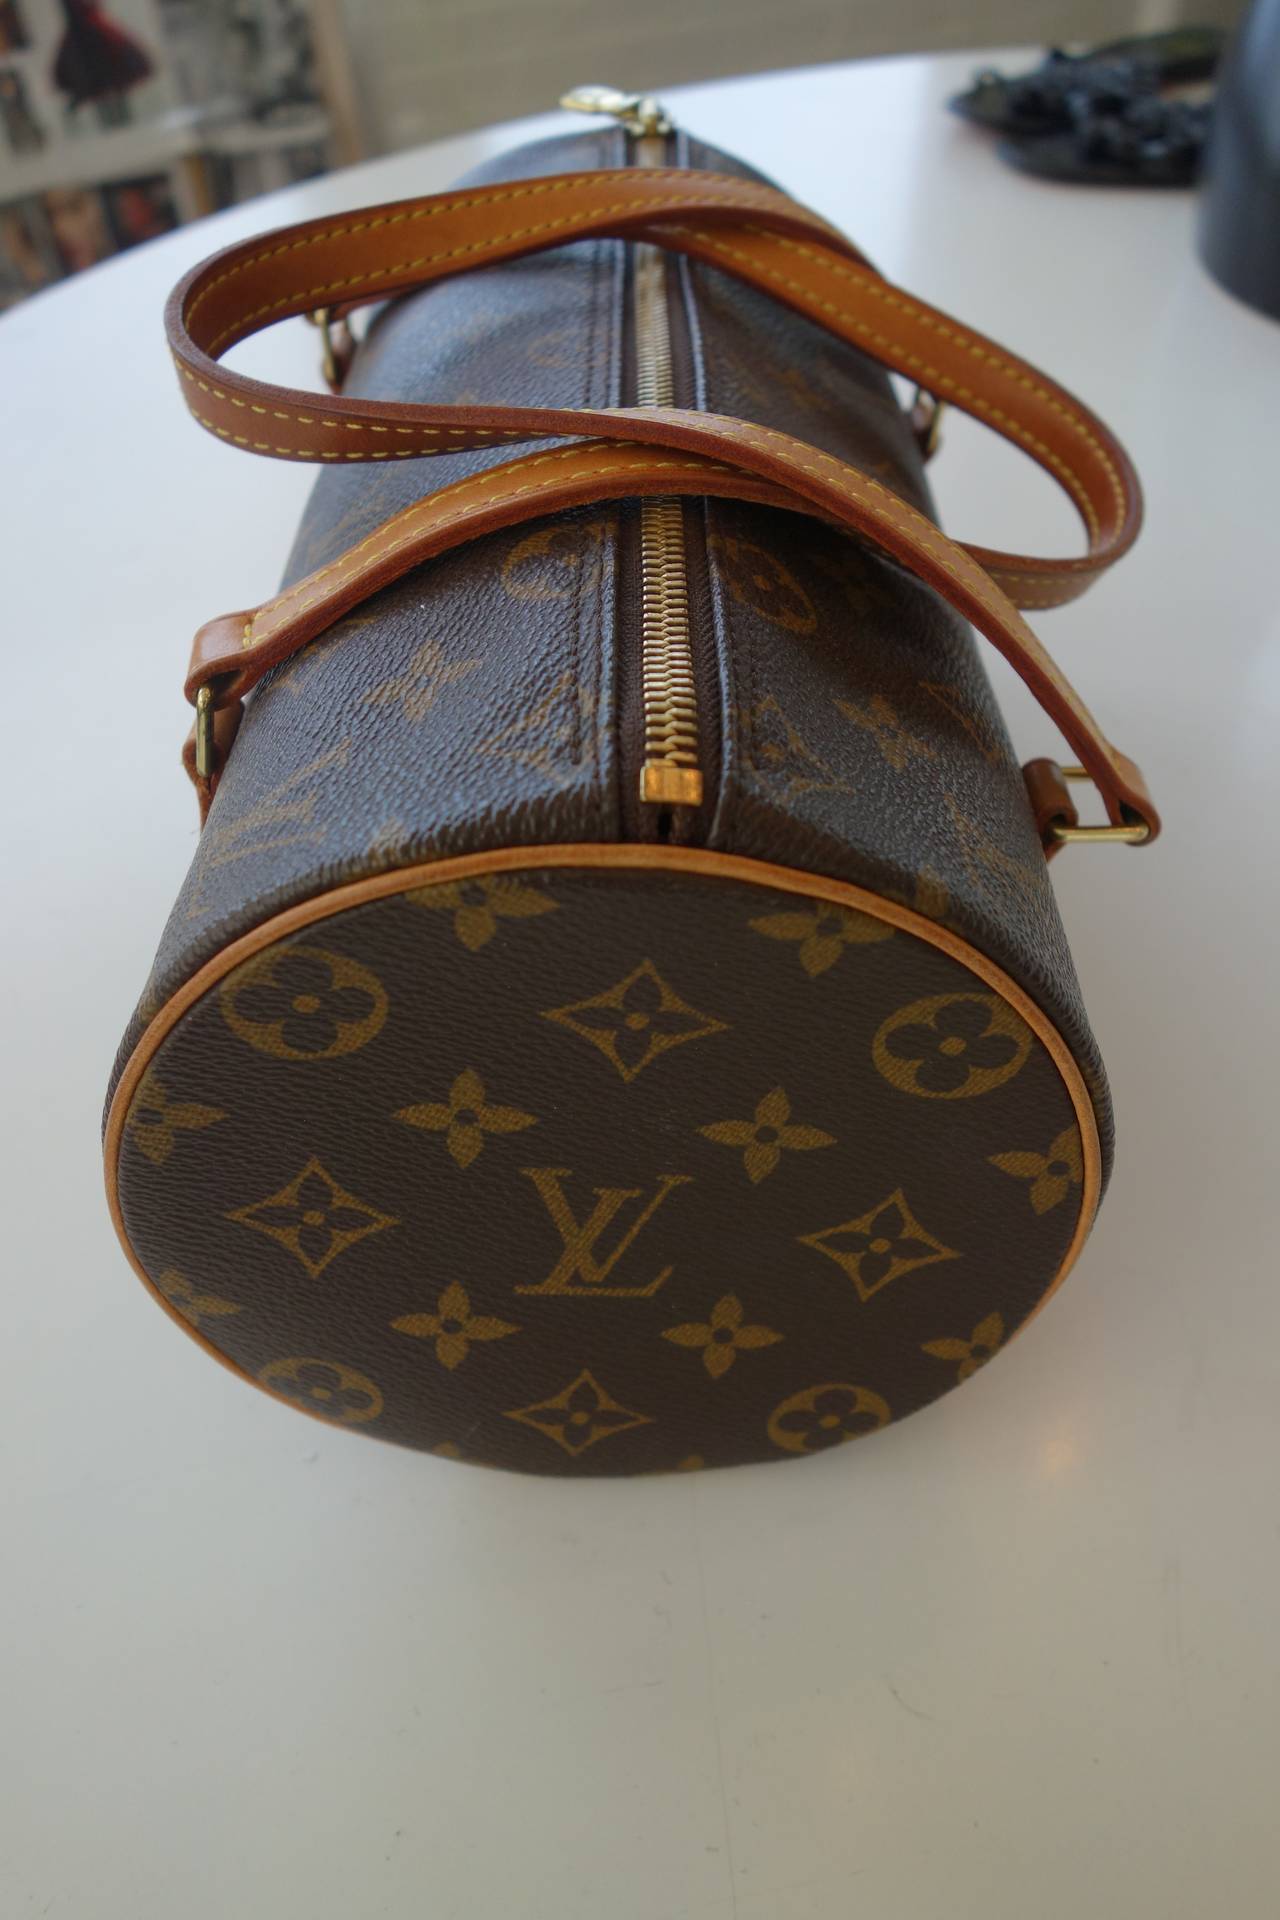 Louis Vuitton monogram canvas small handbag.